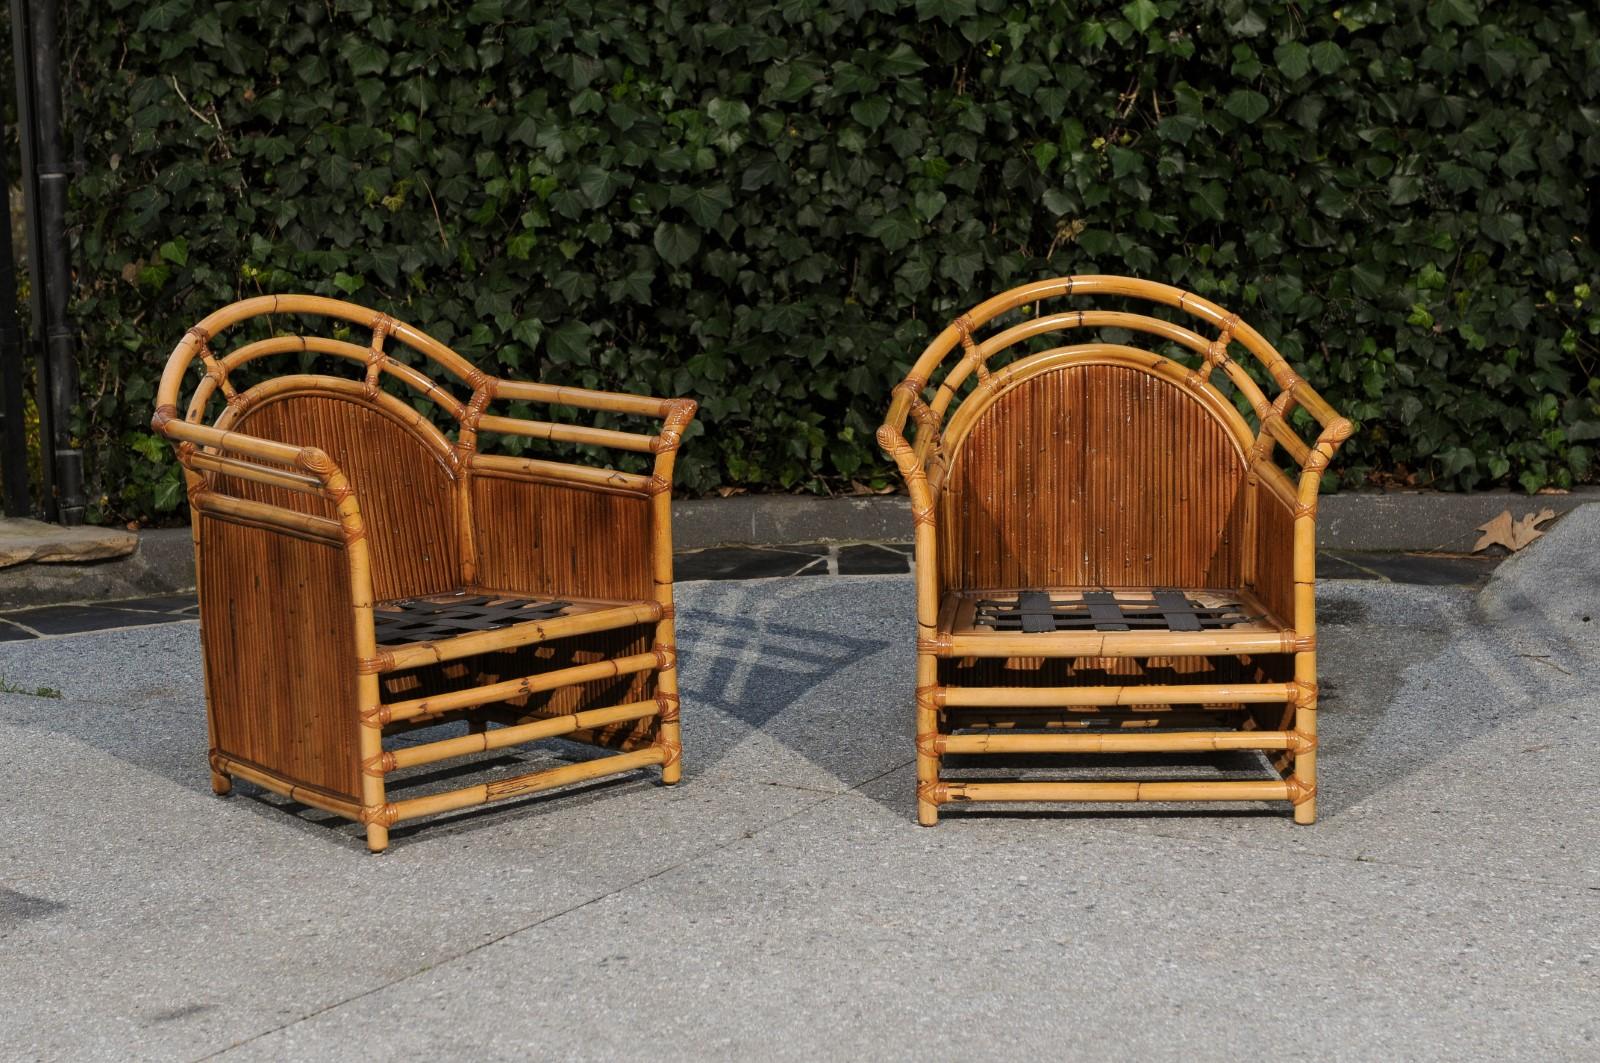 Ces magnifiques châssis de chaises longues sont expédiés tels qu'ils ont été photographiés et décrits par des professionnels dans le texte de l'annonce : Méticuleusement restaurés par des professionnels et prêts à être tapissés.

Une paire